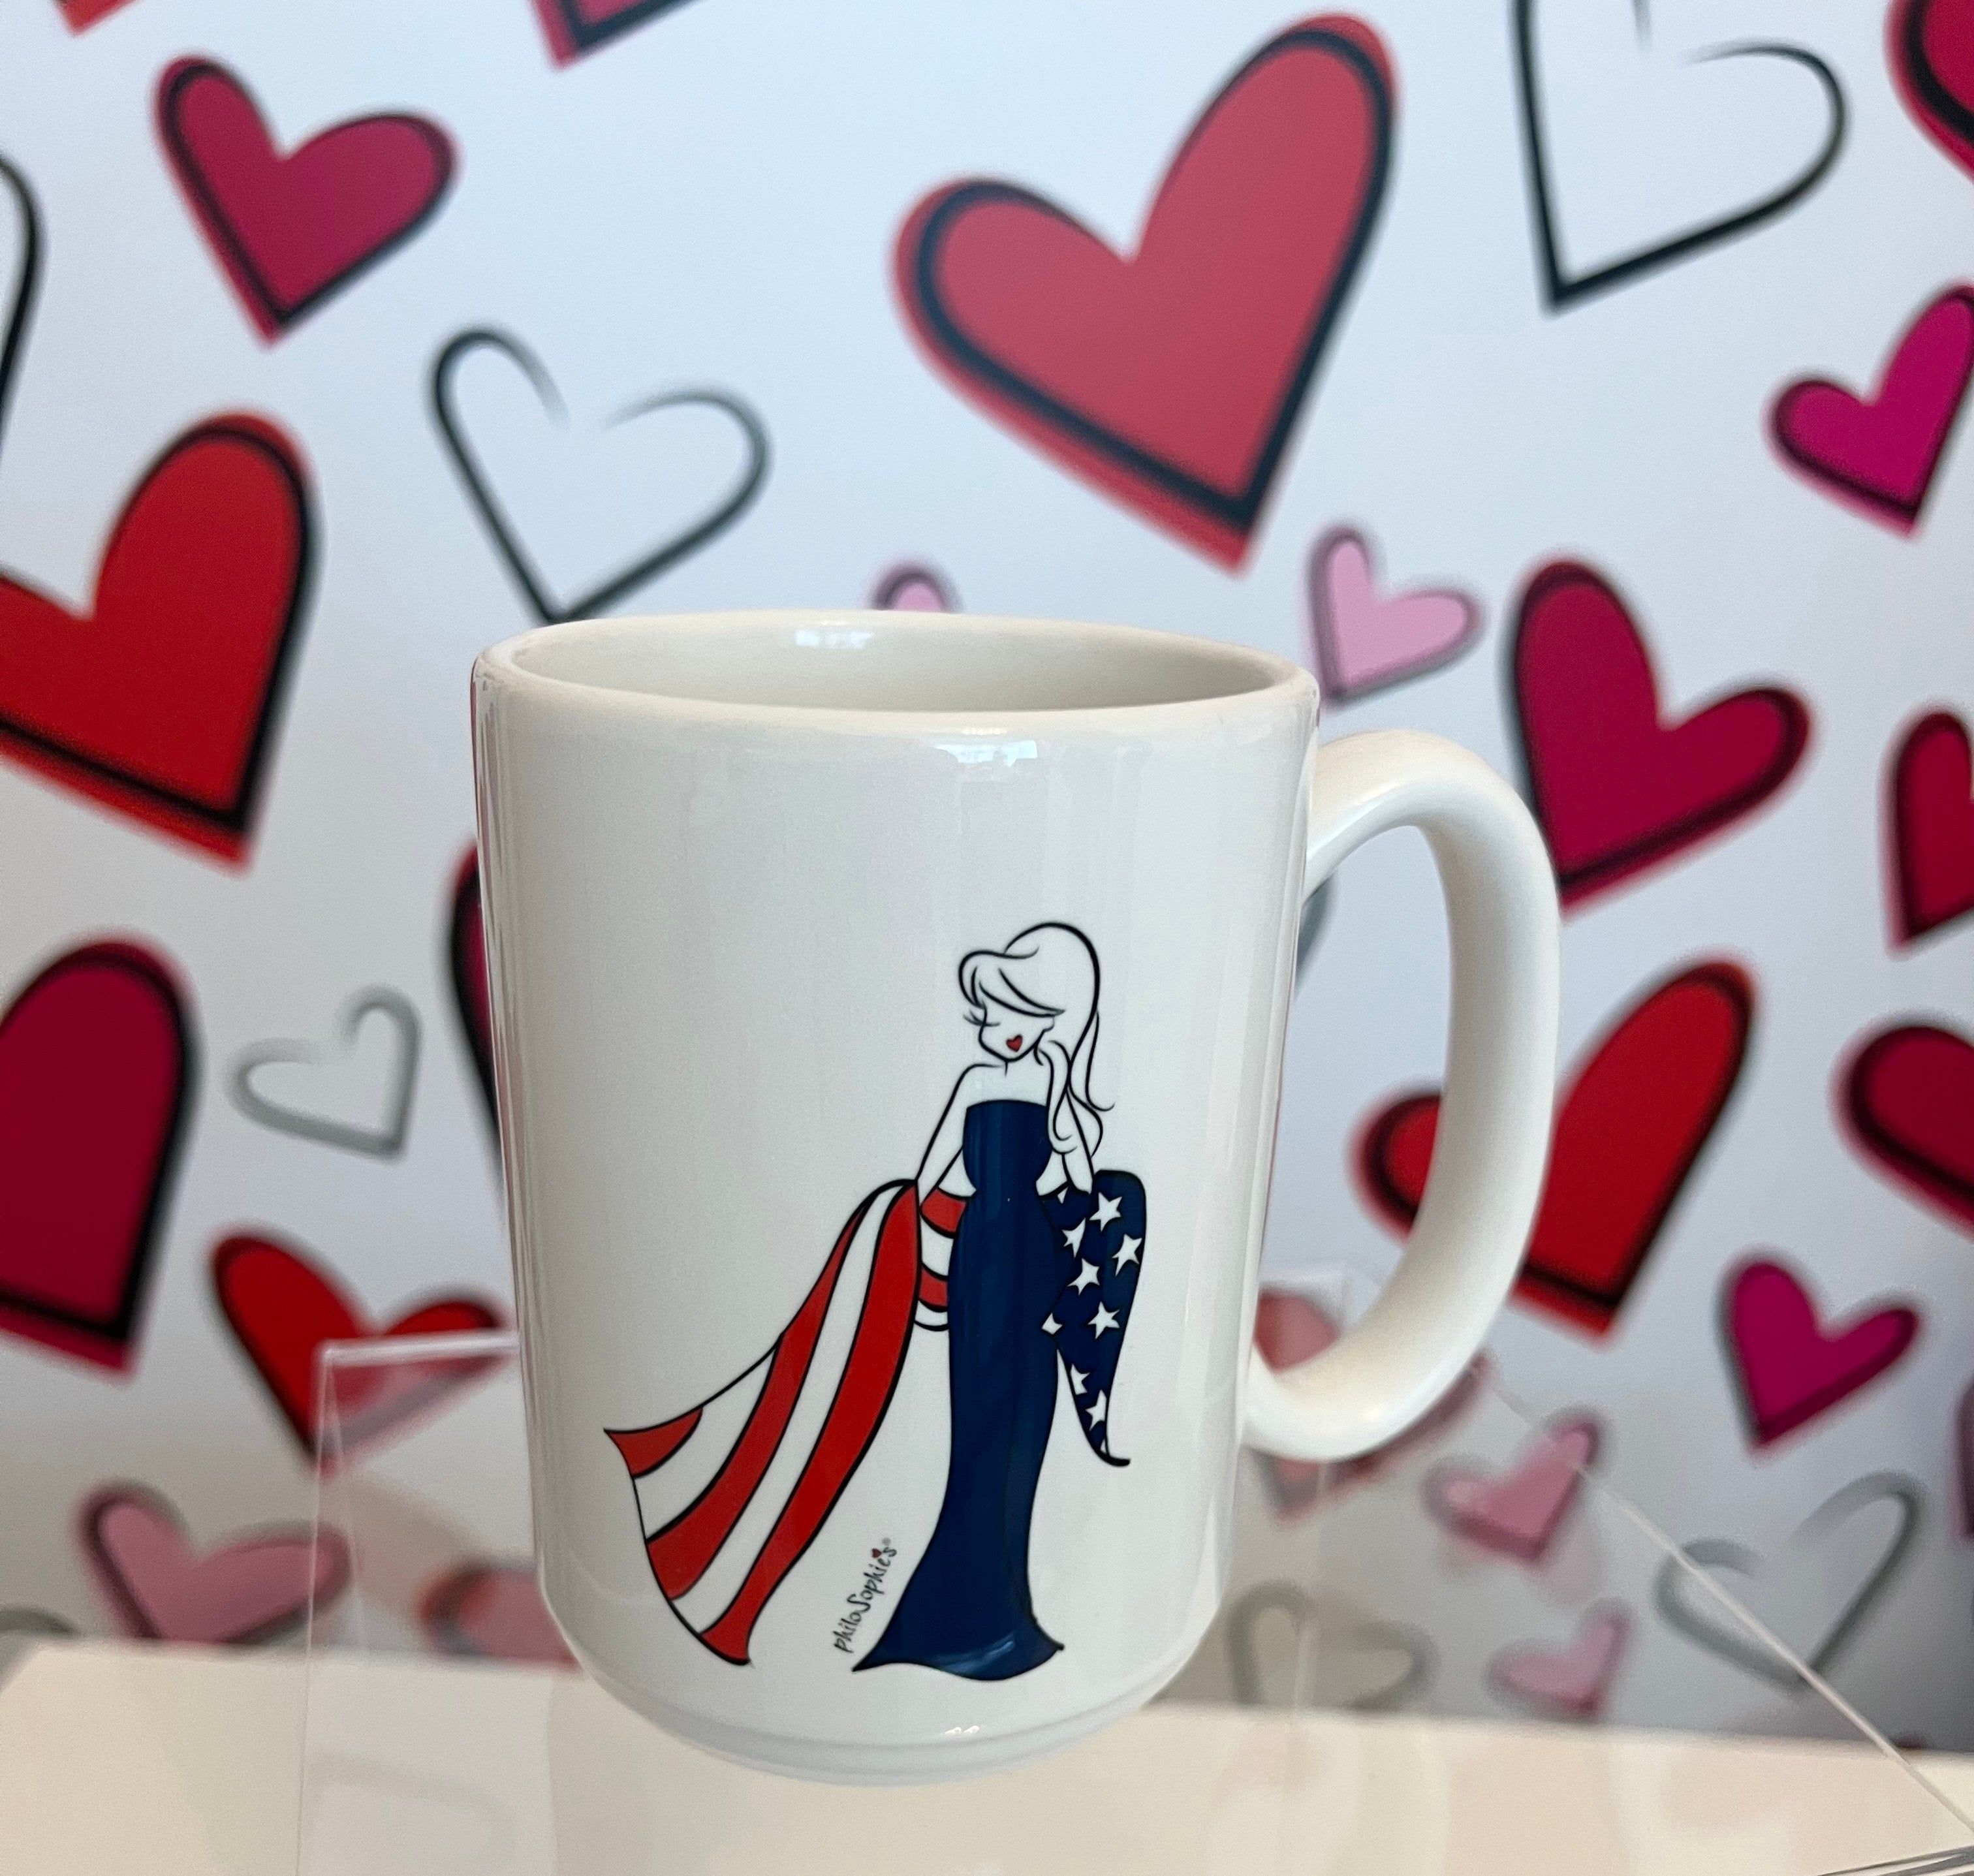 Inspirational Ceramic Mug - American Flag